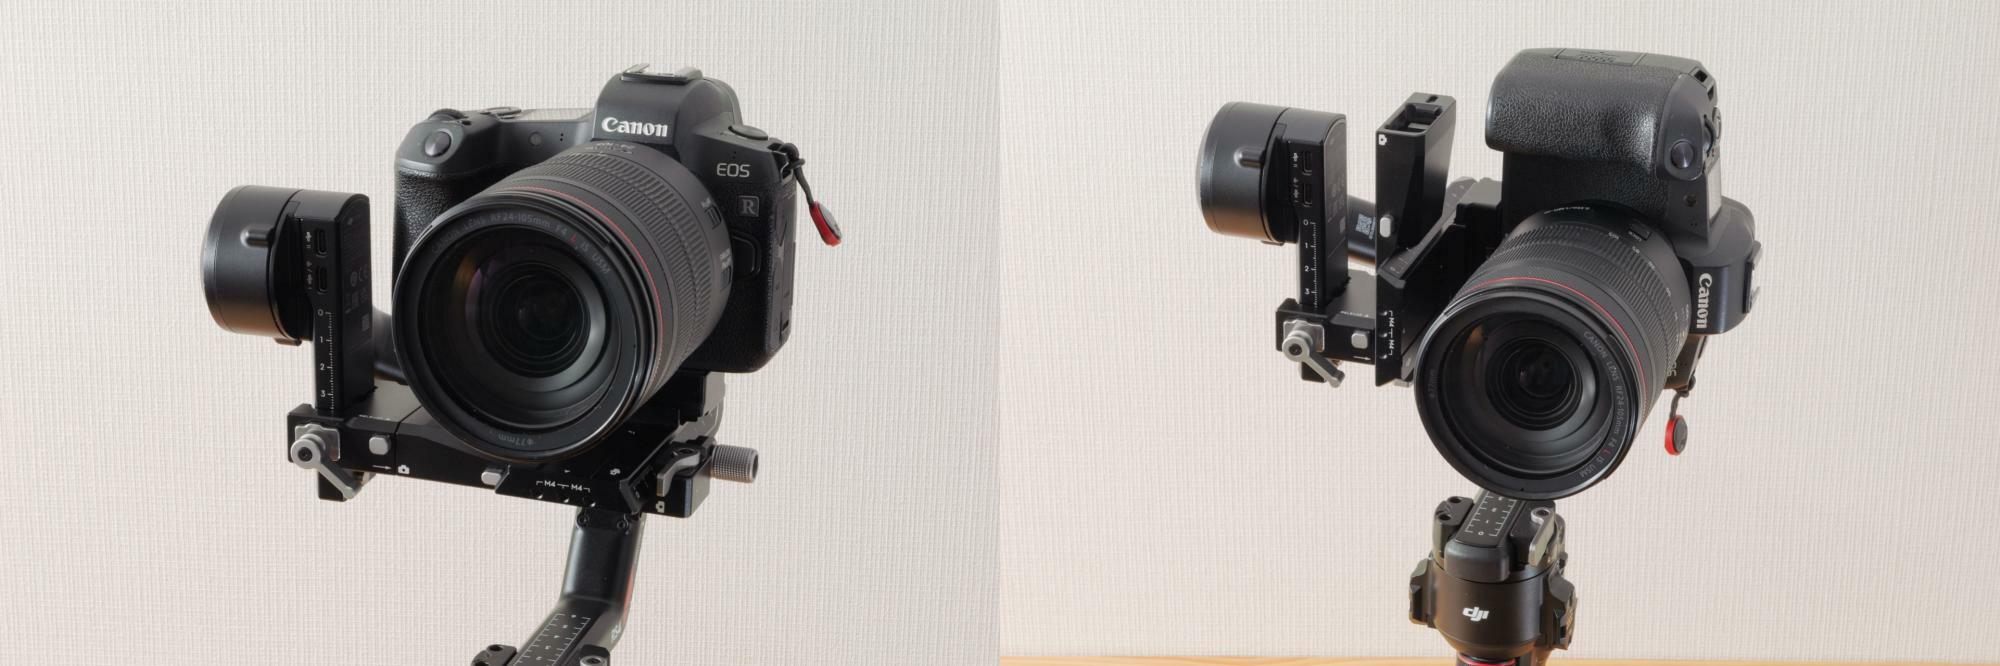 追加のアクセサリーの必要なく、カメラの載っているブラケットの取り付け位置を変えるだけで縦向き撮影が可能。